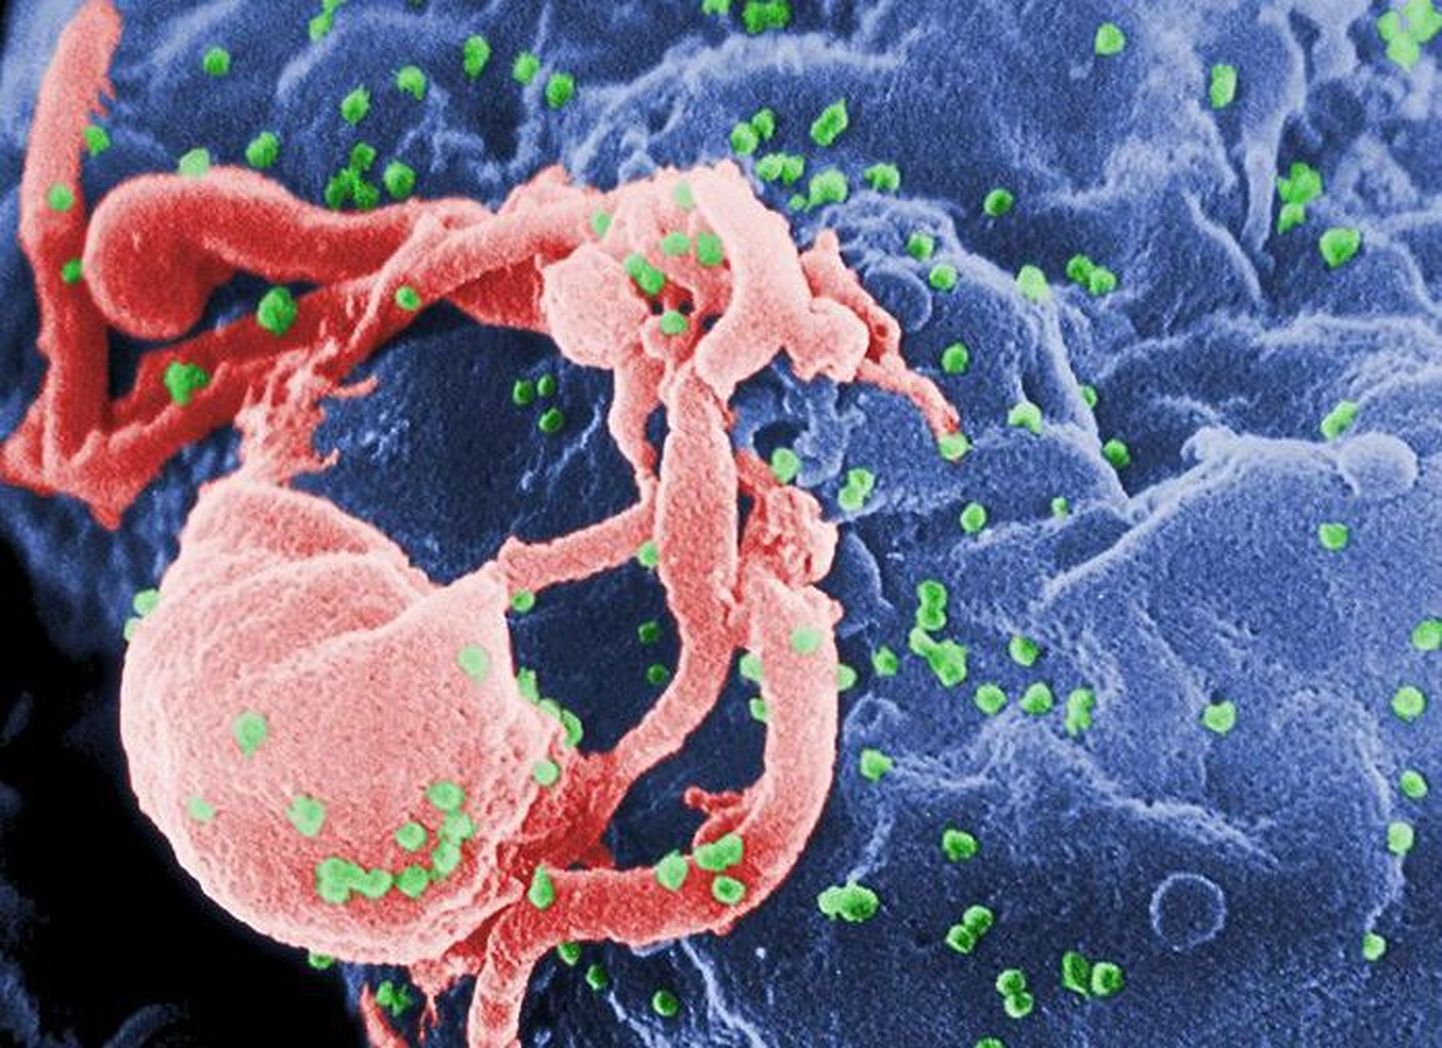 HI-viirus mikroskoobi all suurendatuna